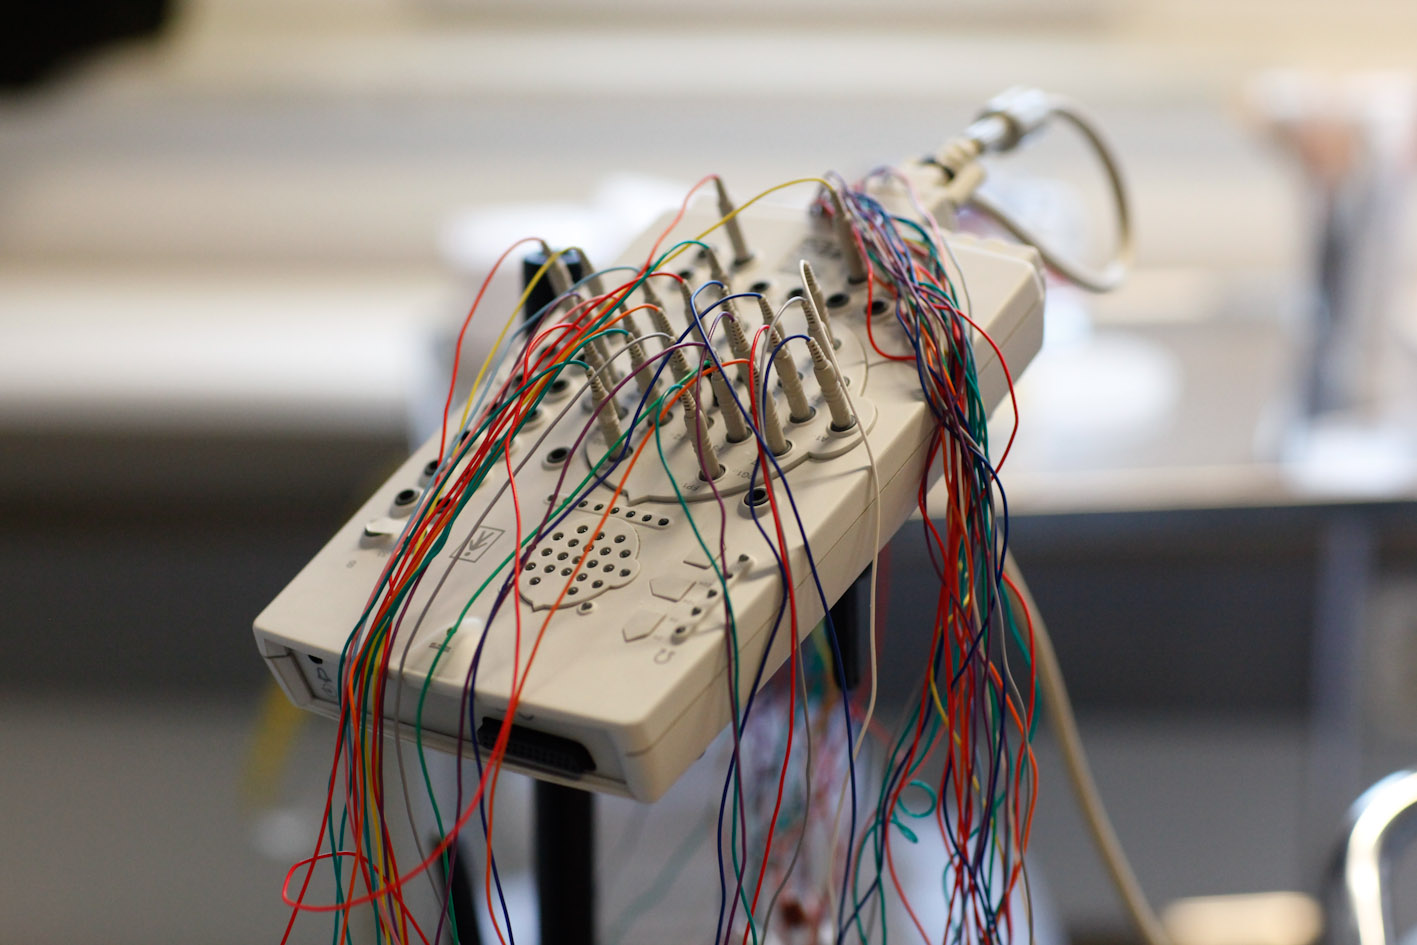 Elektroderna är gjorda av metall och leder elektricitet från din hjärna till eeg-apparaten.